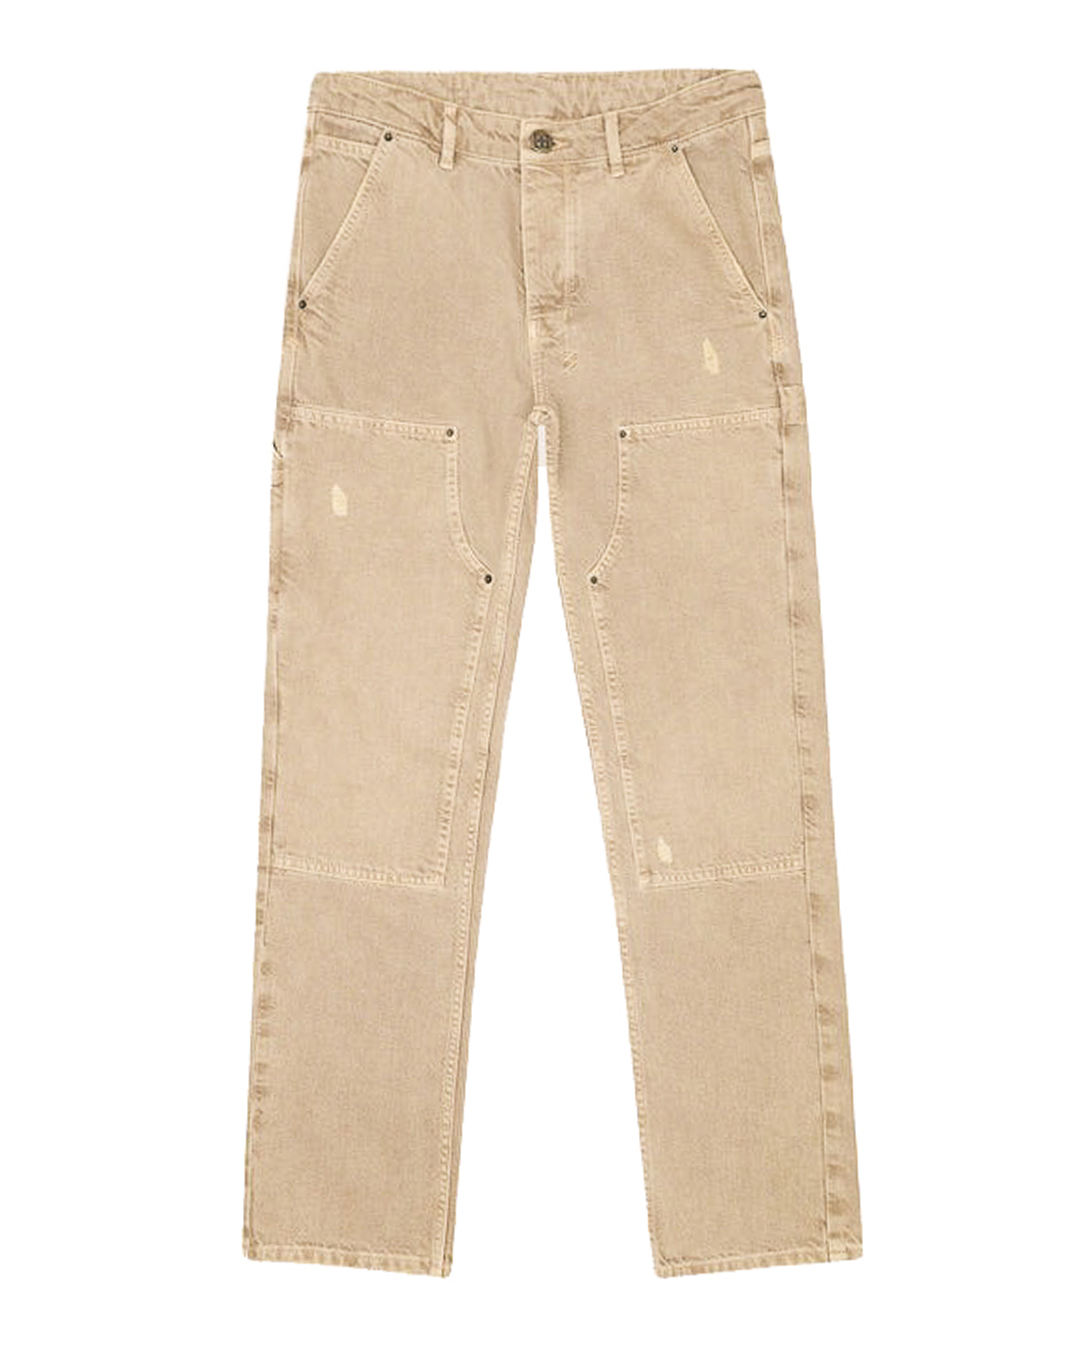 джинсы KSUBI халат мужской махровый 100% хлопок коричневый xl xxl 52 54 barkas aria ai 1905027